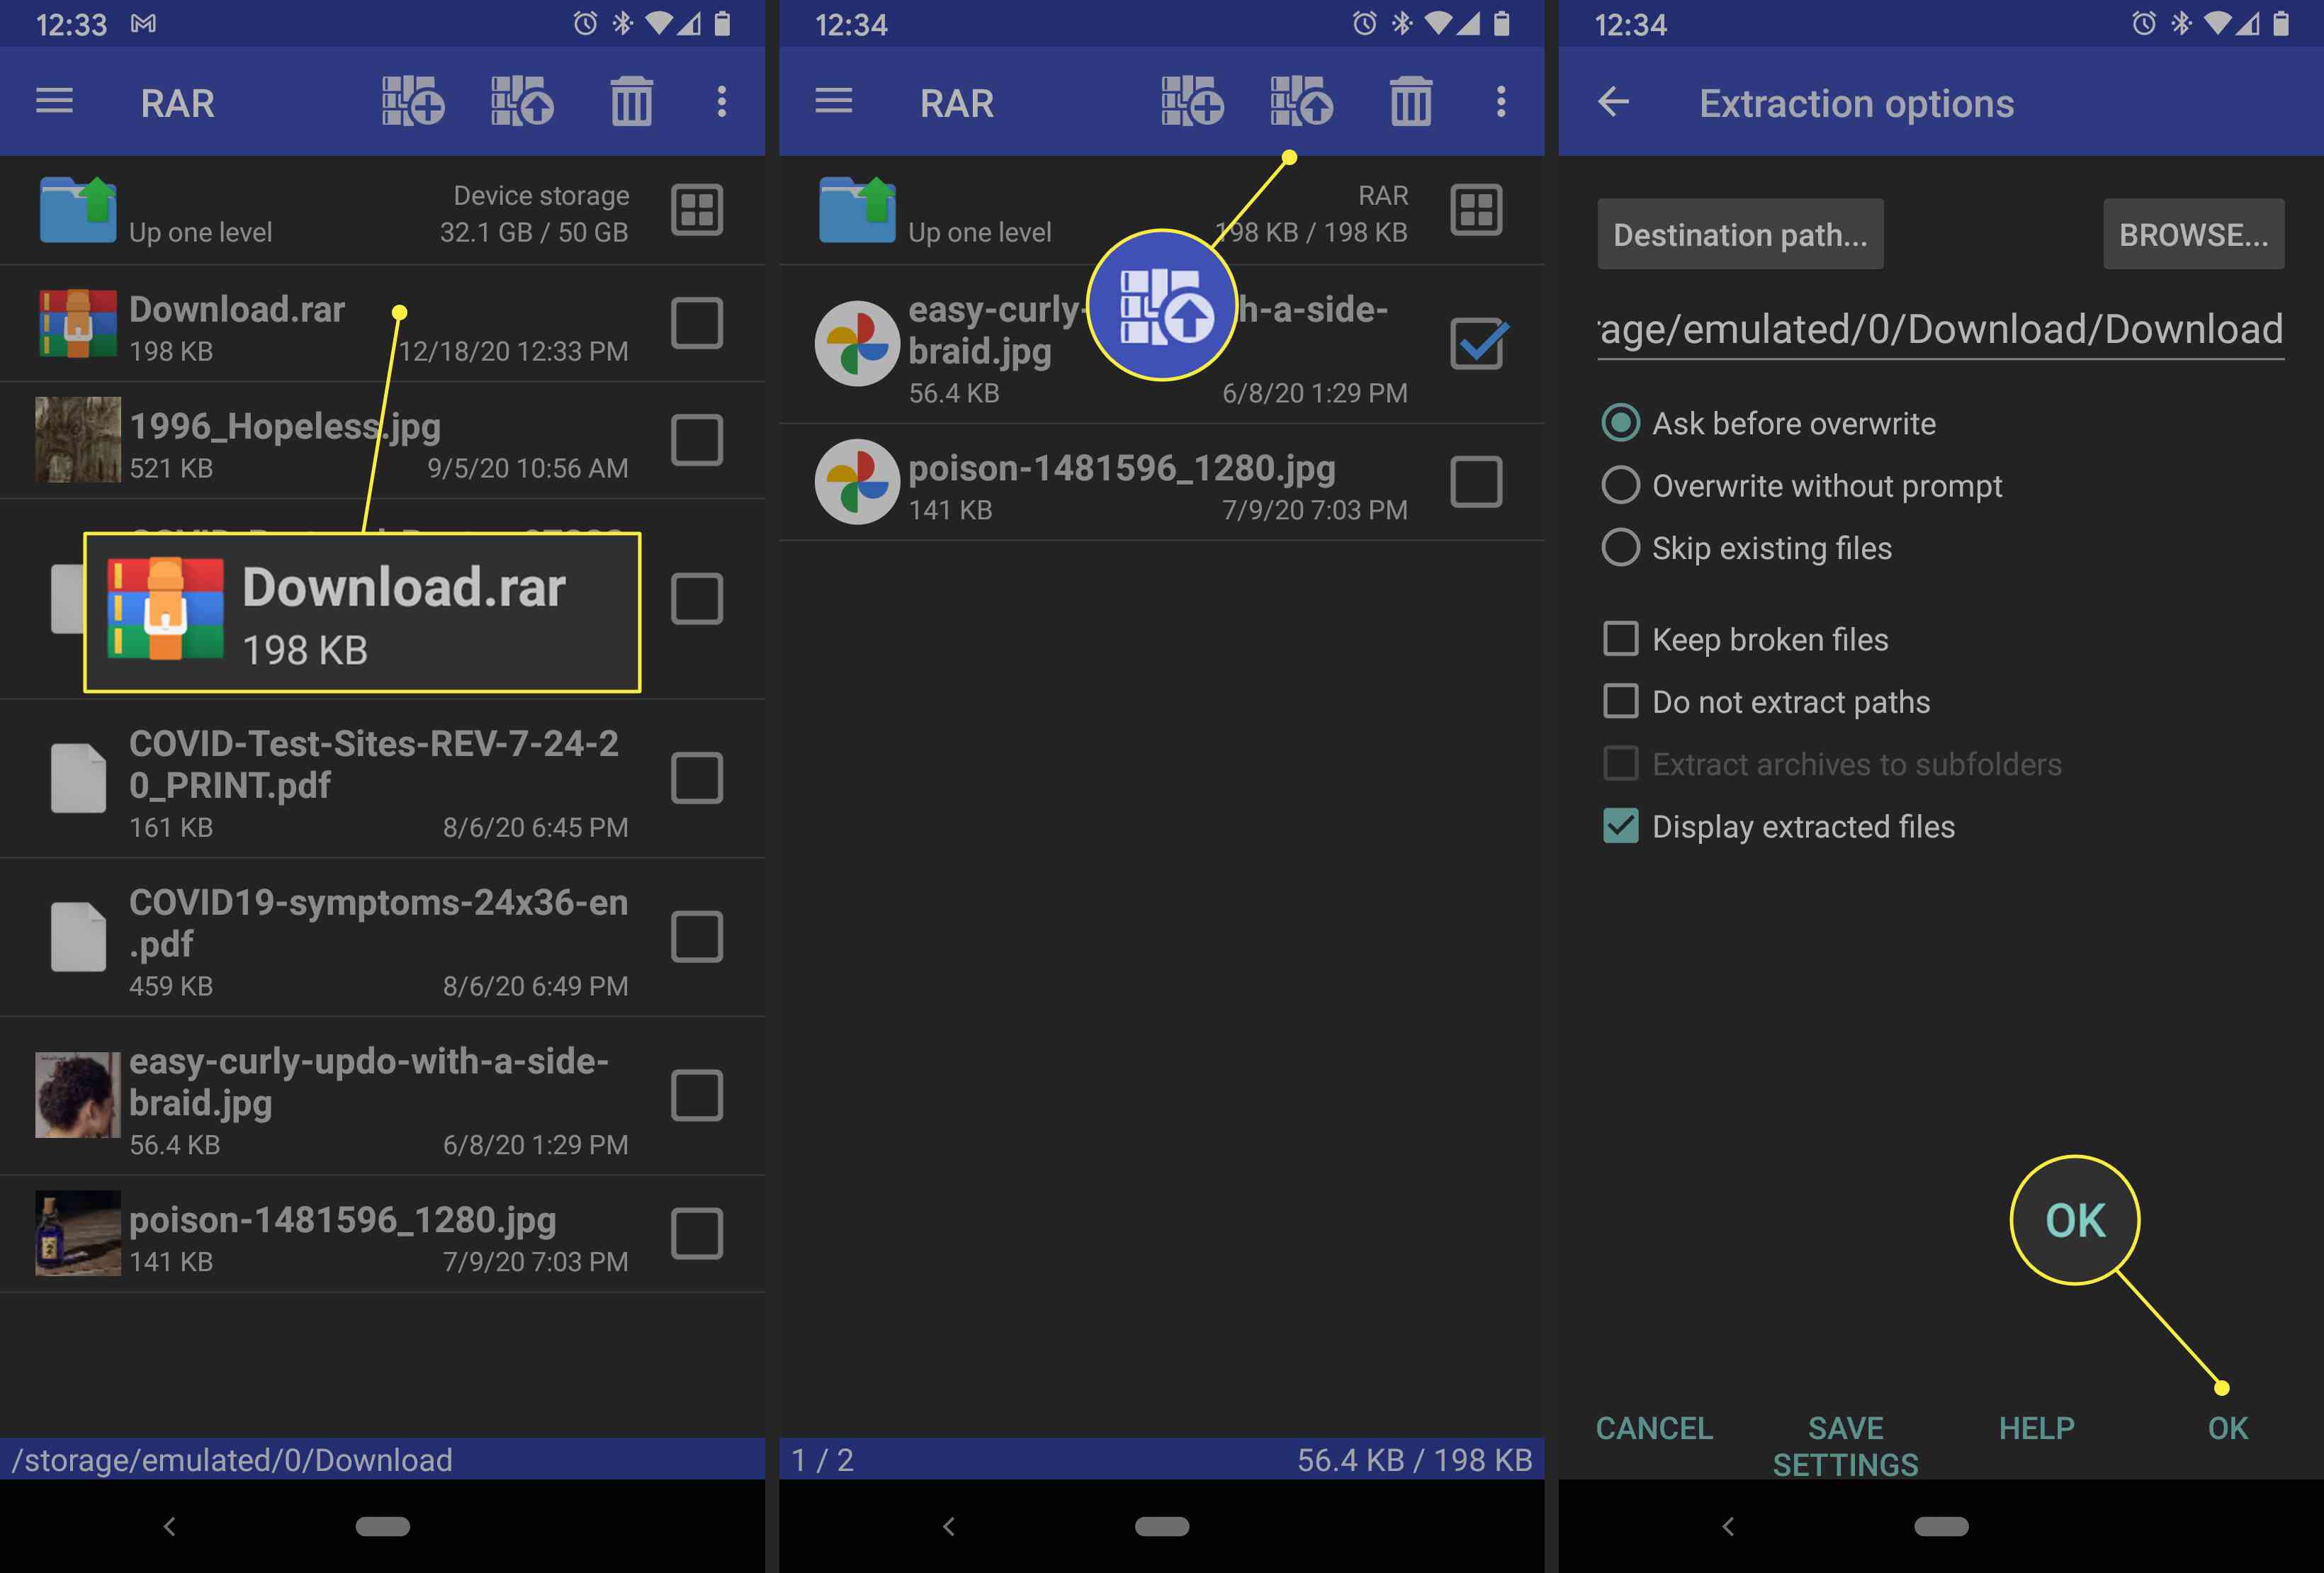 Een Android-gebruiker extraheert een .rar-bestand met behulp van de RAR-app